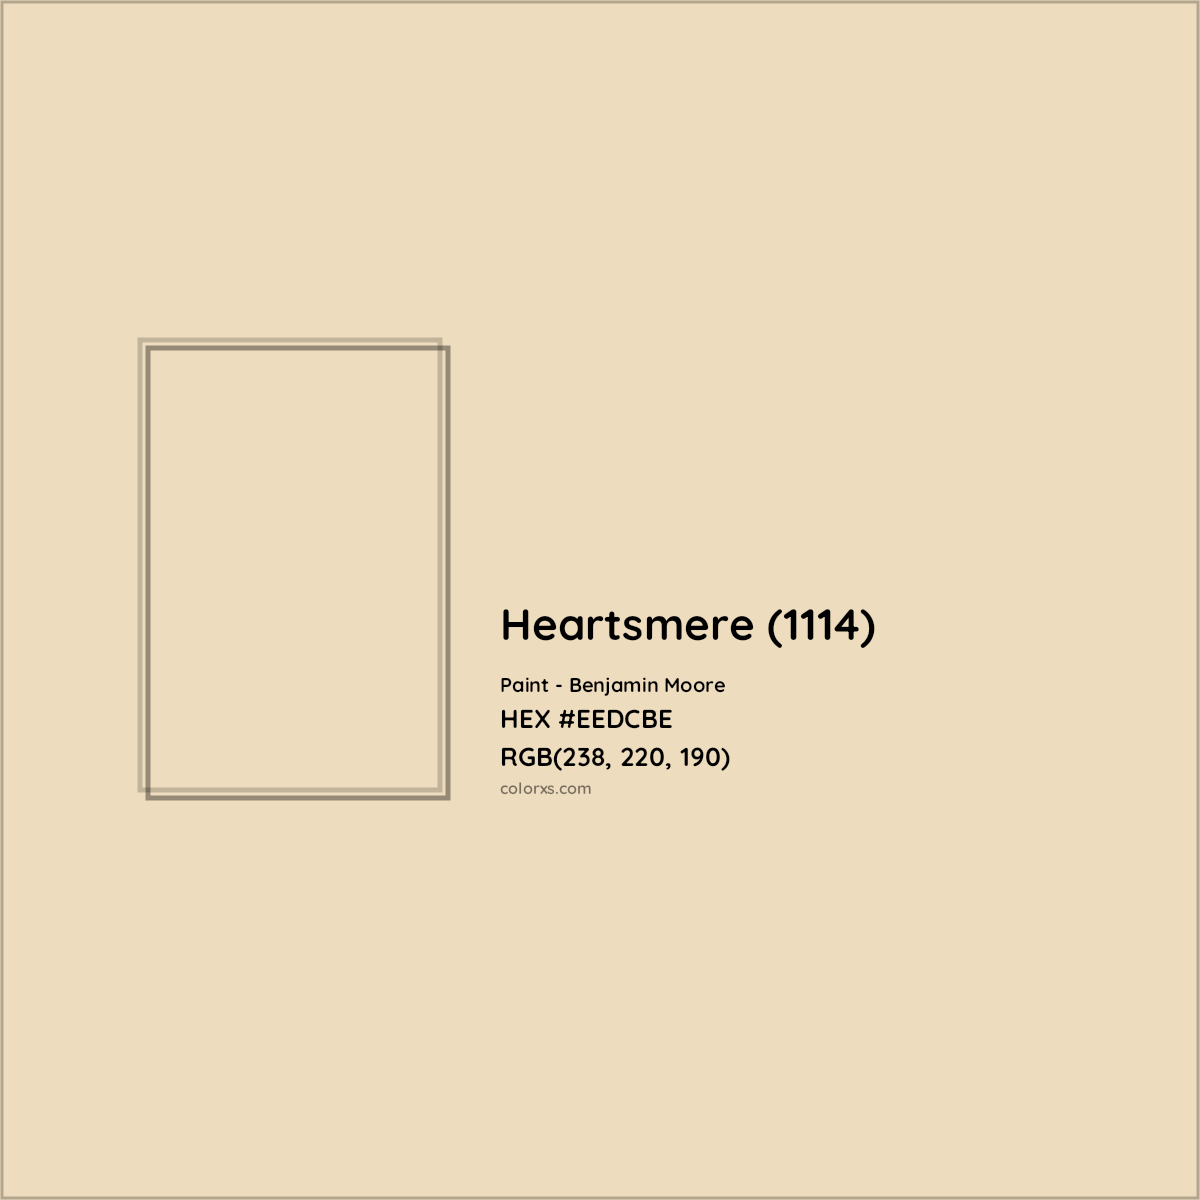 HEX #EEDCBE Heartsmere (1114) Paint Benjamin Moore - Color Code